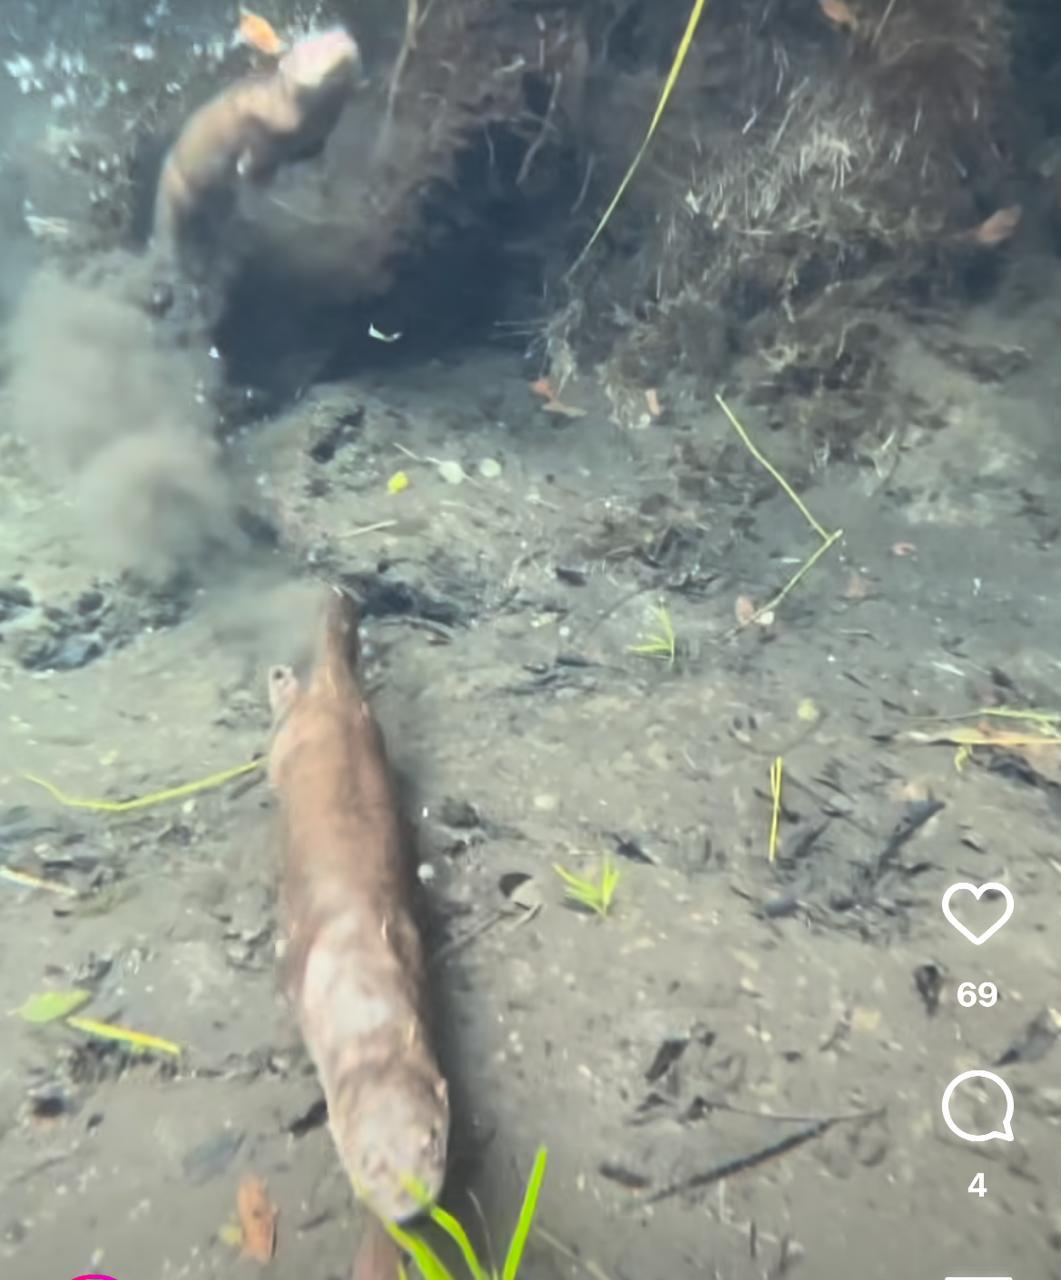 Lontras em Bonito: um balé aquático fascinante